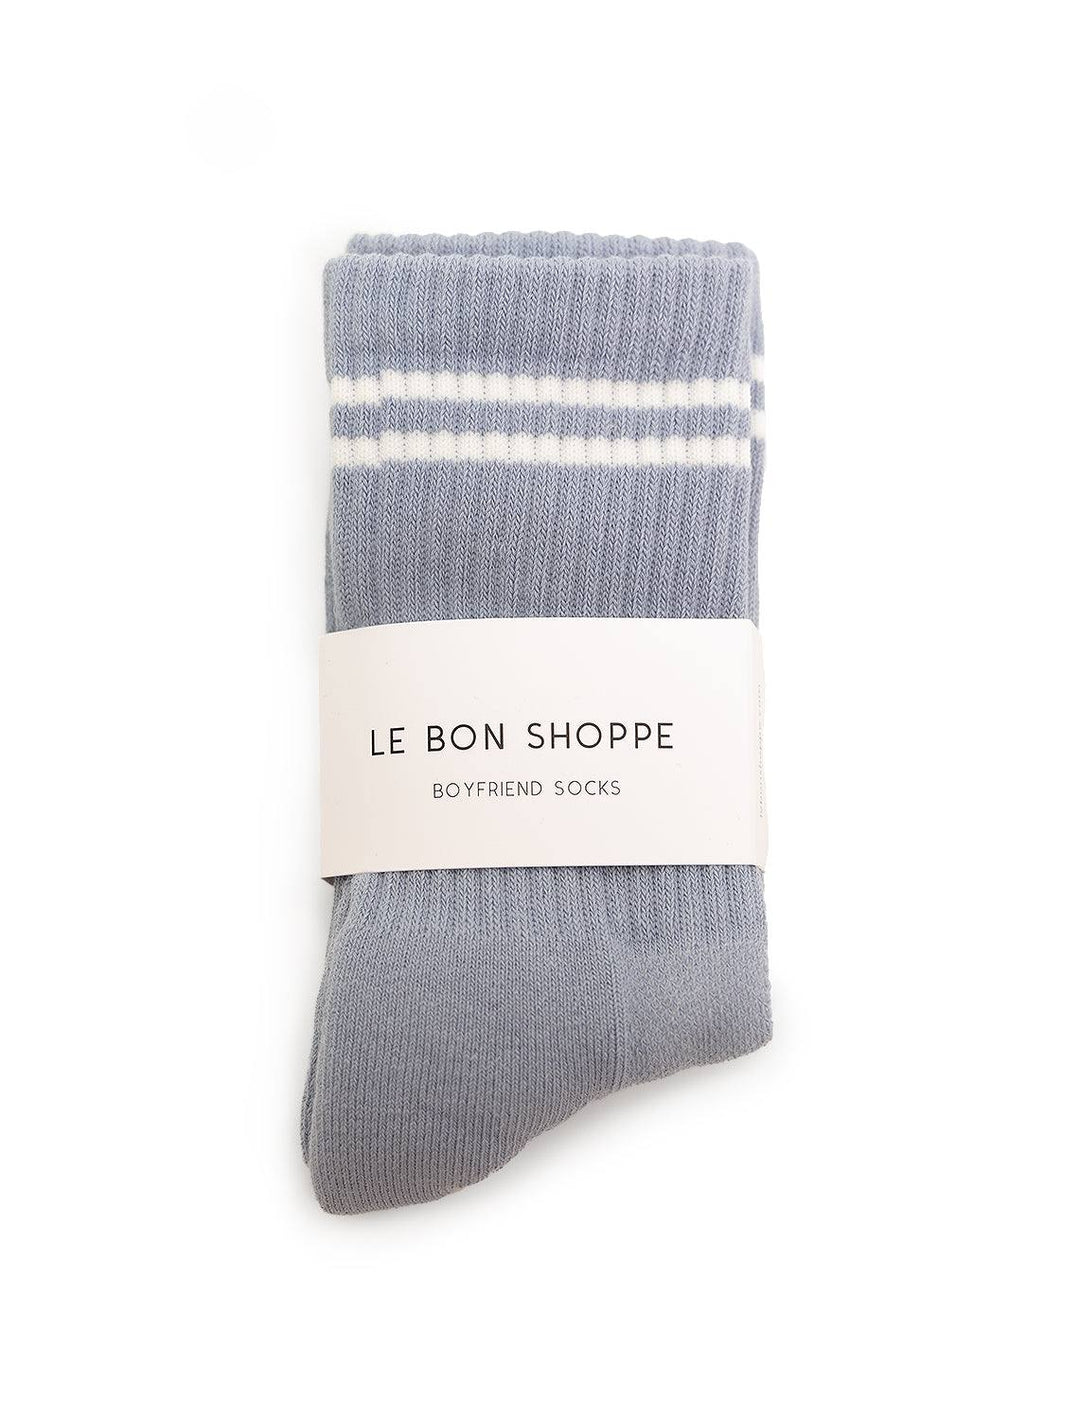 Front view of Le Bon Shoppe's boyfriend socks in blue grey.